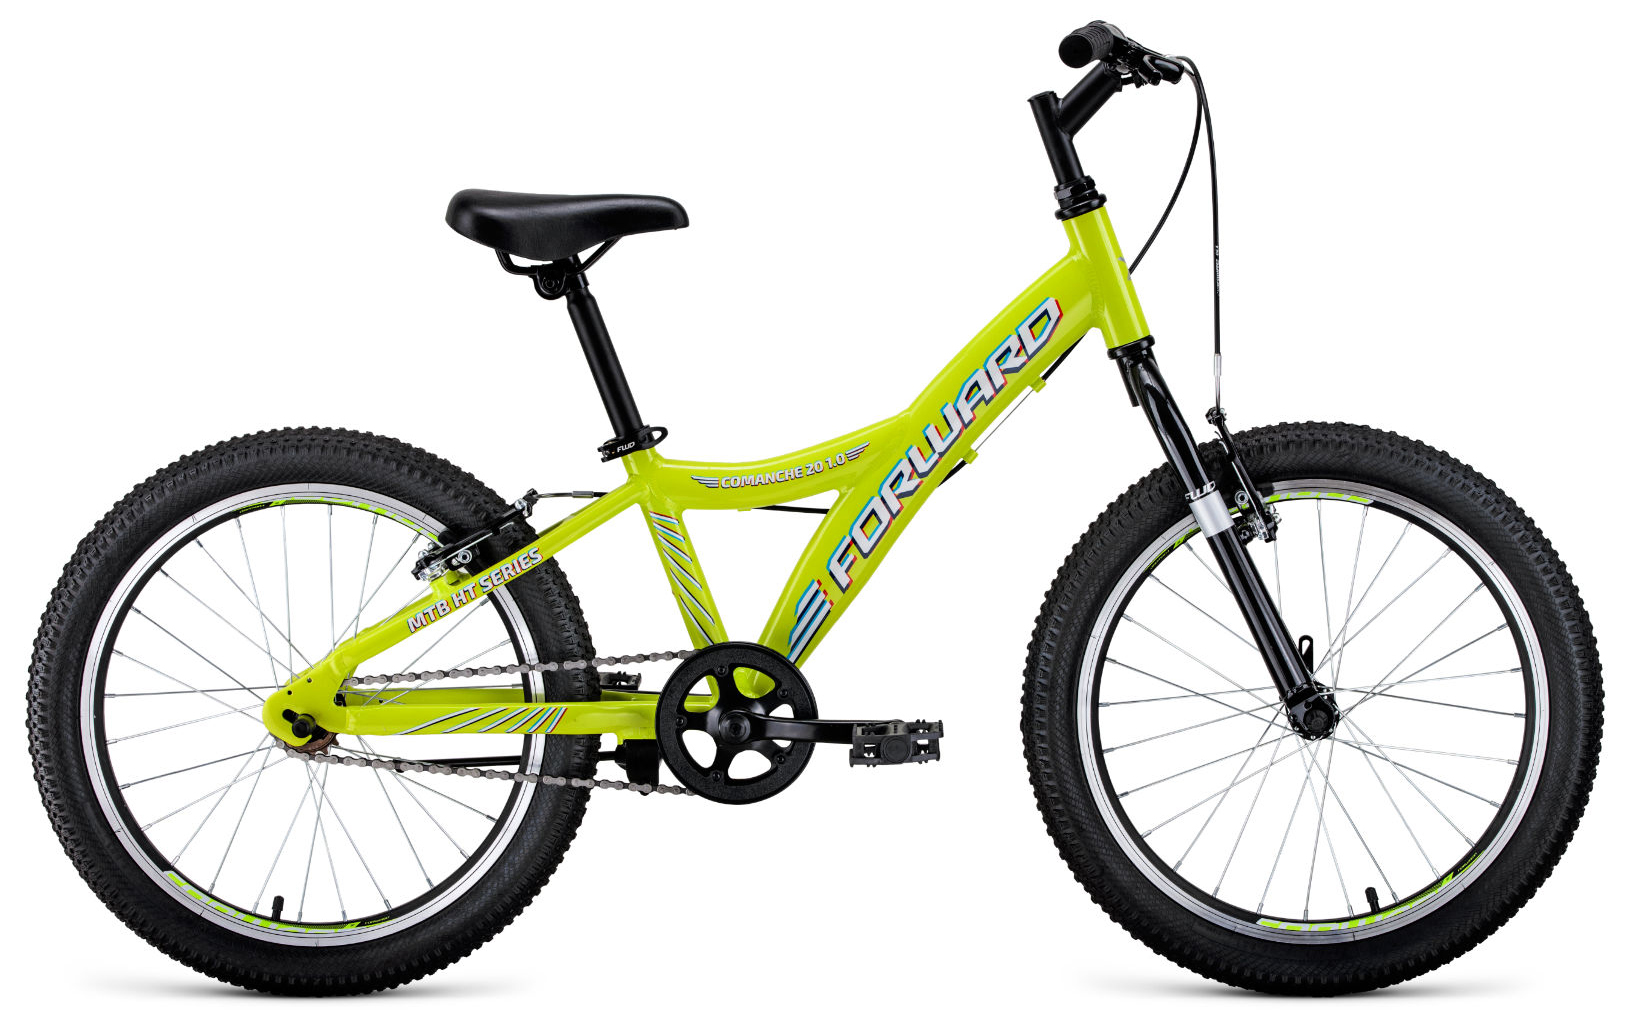  Отзывы о Детском велосипеде Forward Comanche 20 1.0 (2021) 2021